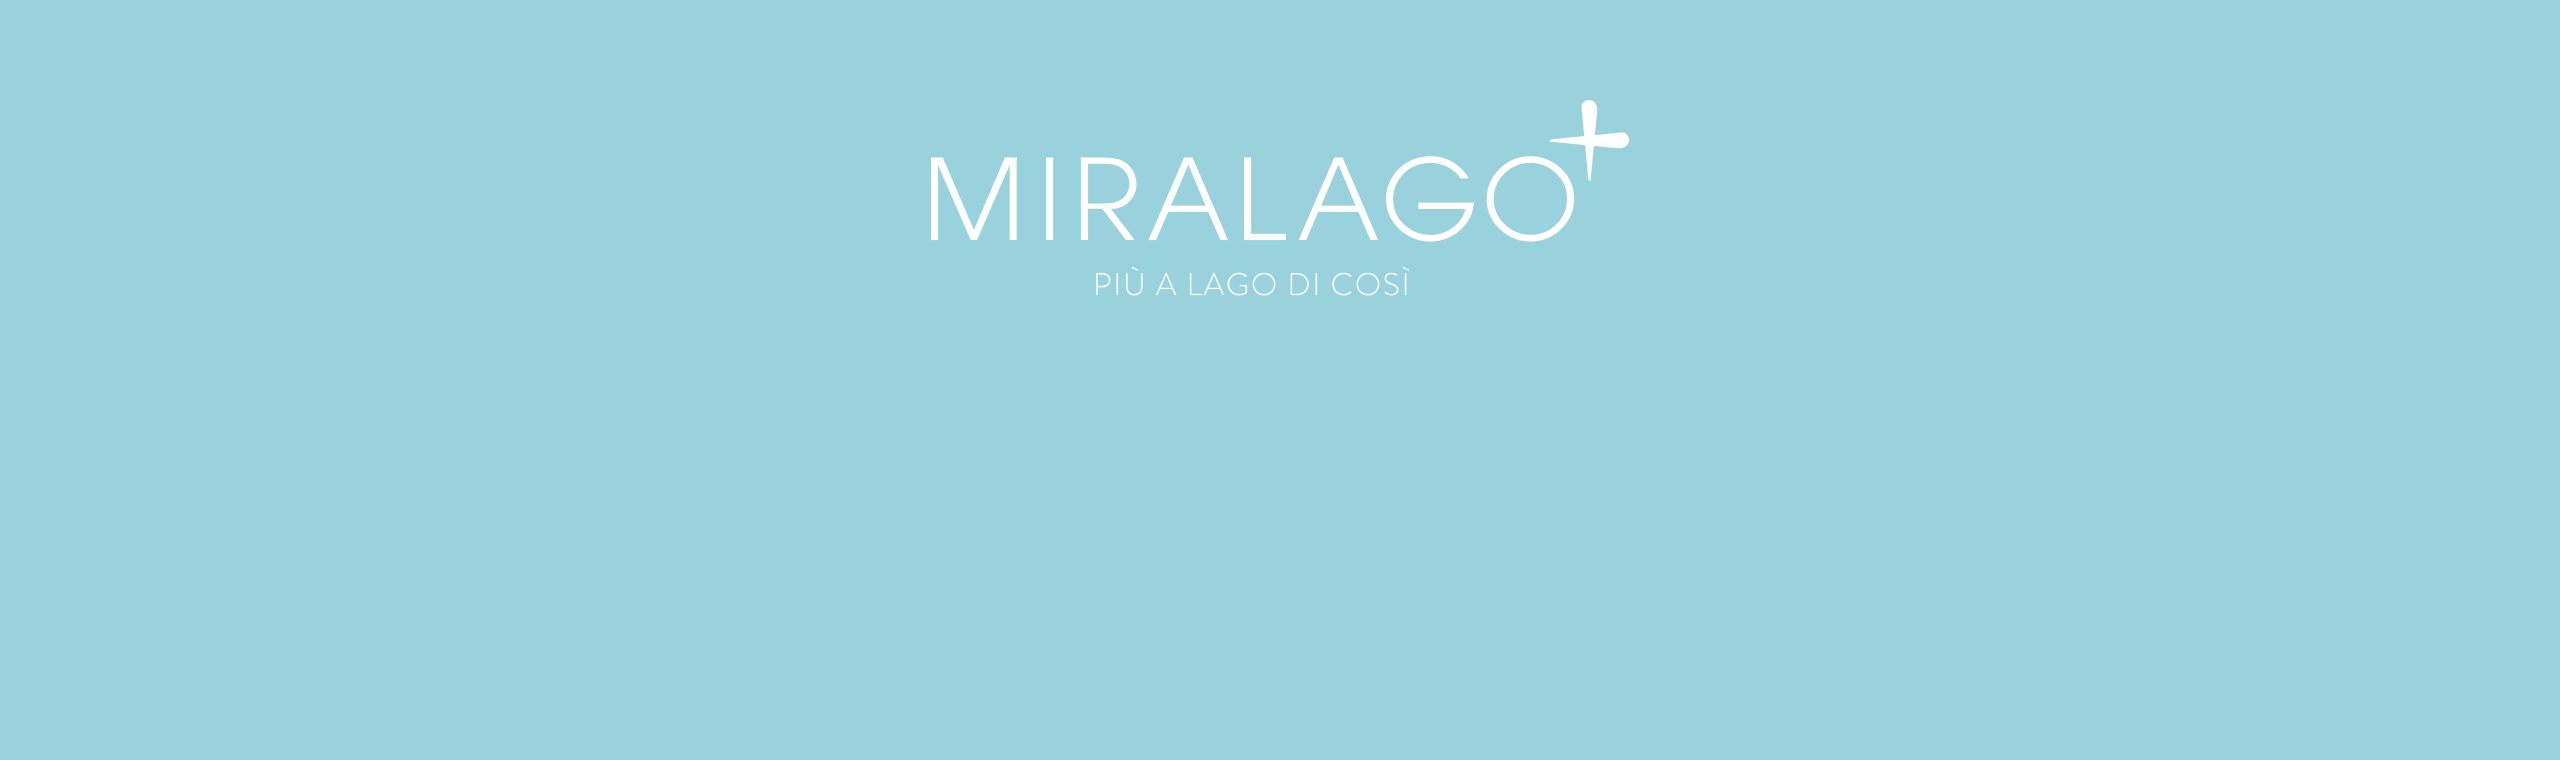 Miralago | FUSION EXPERIENCE – da Oriente a Occidente